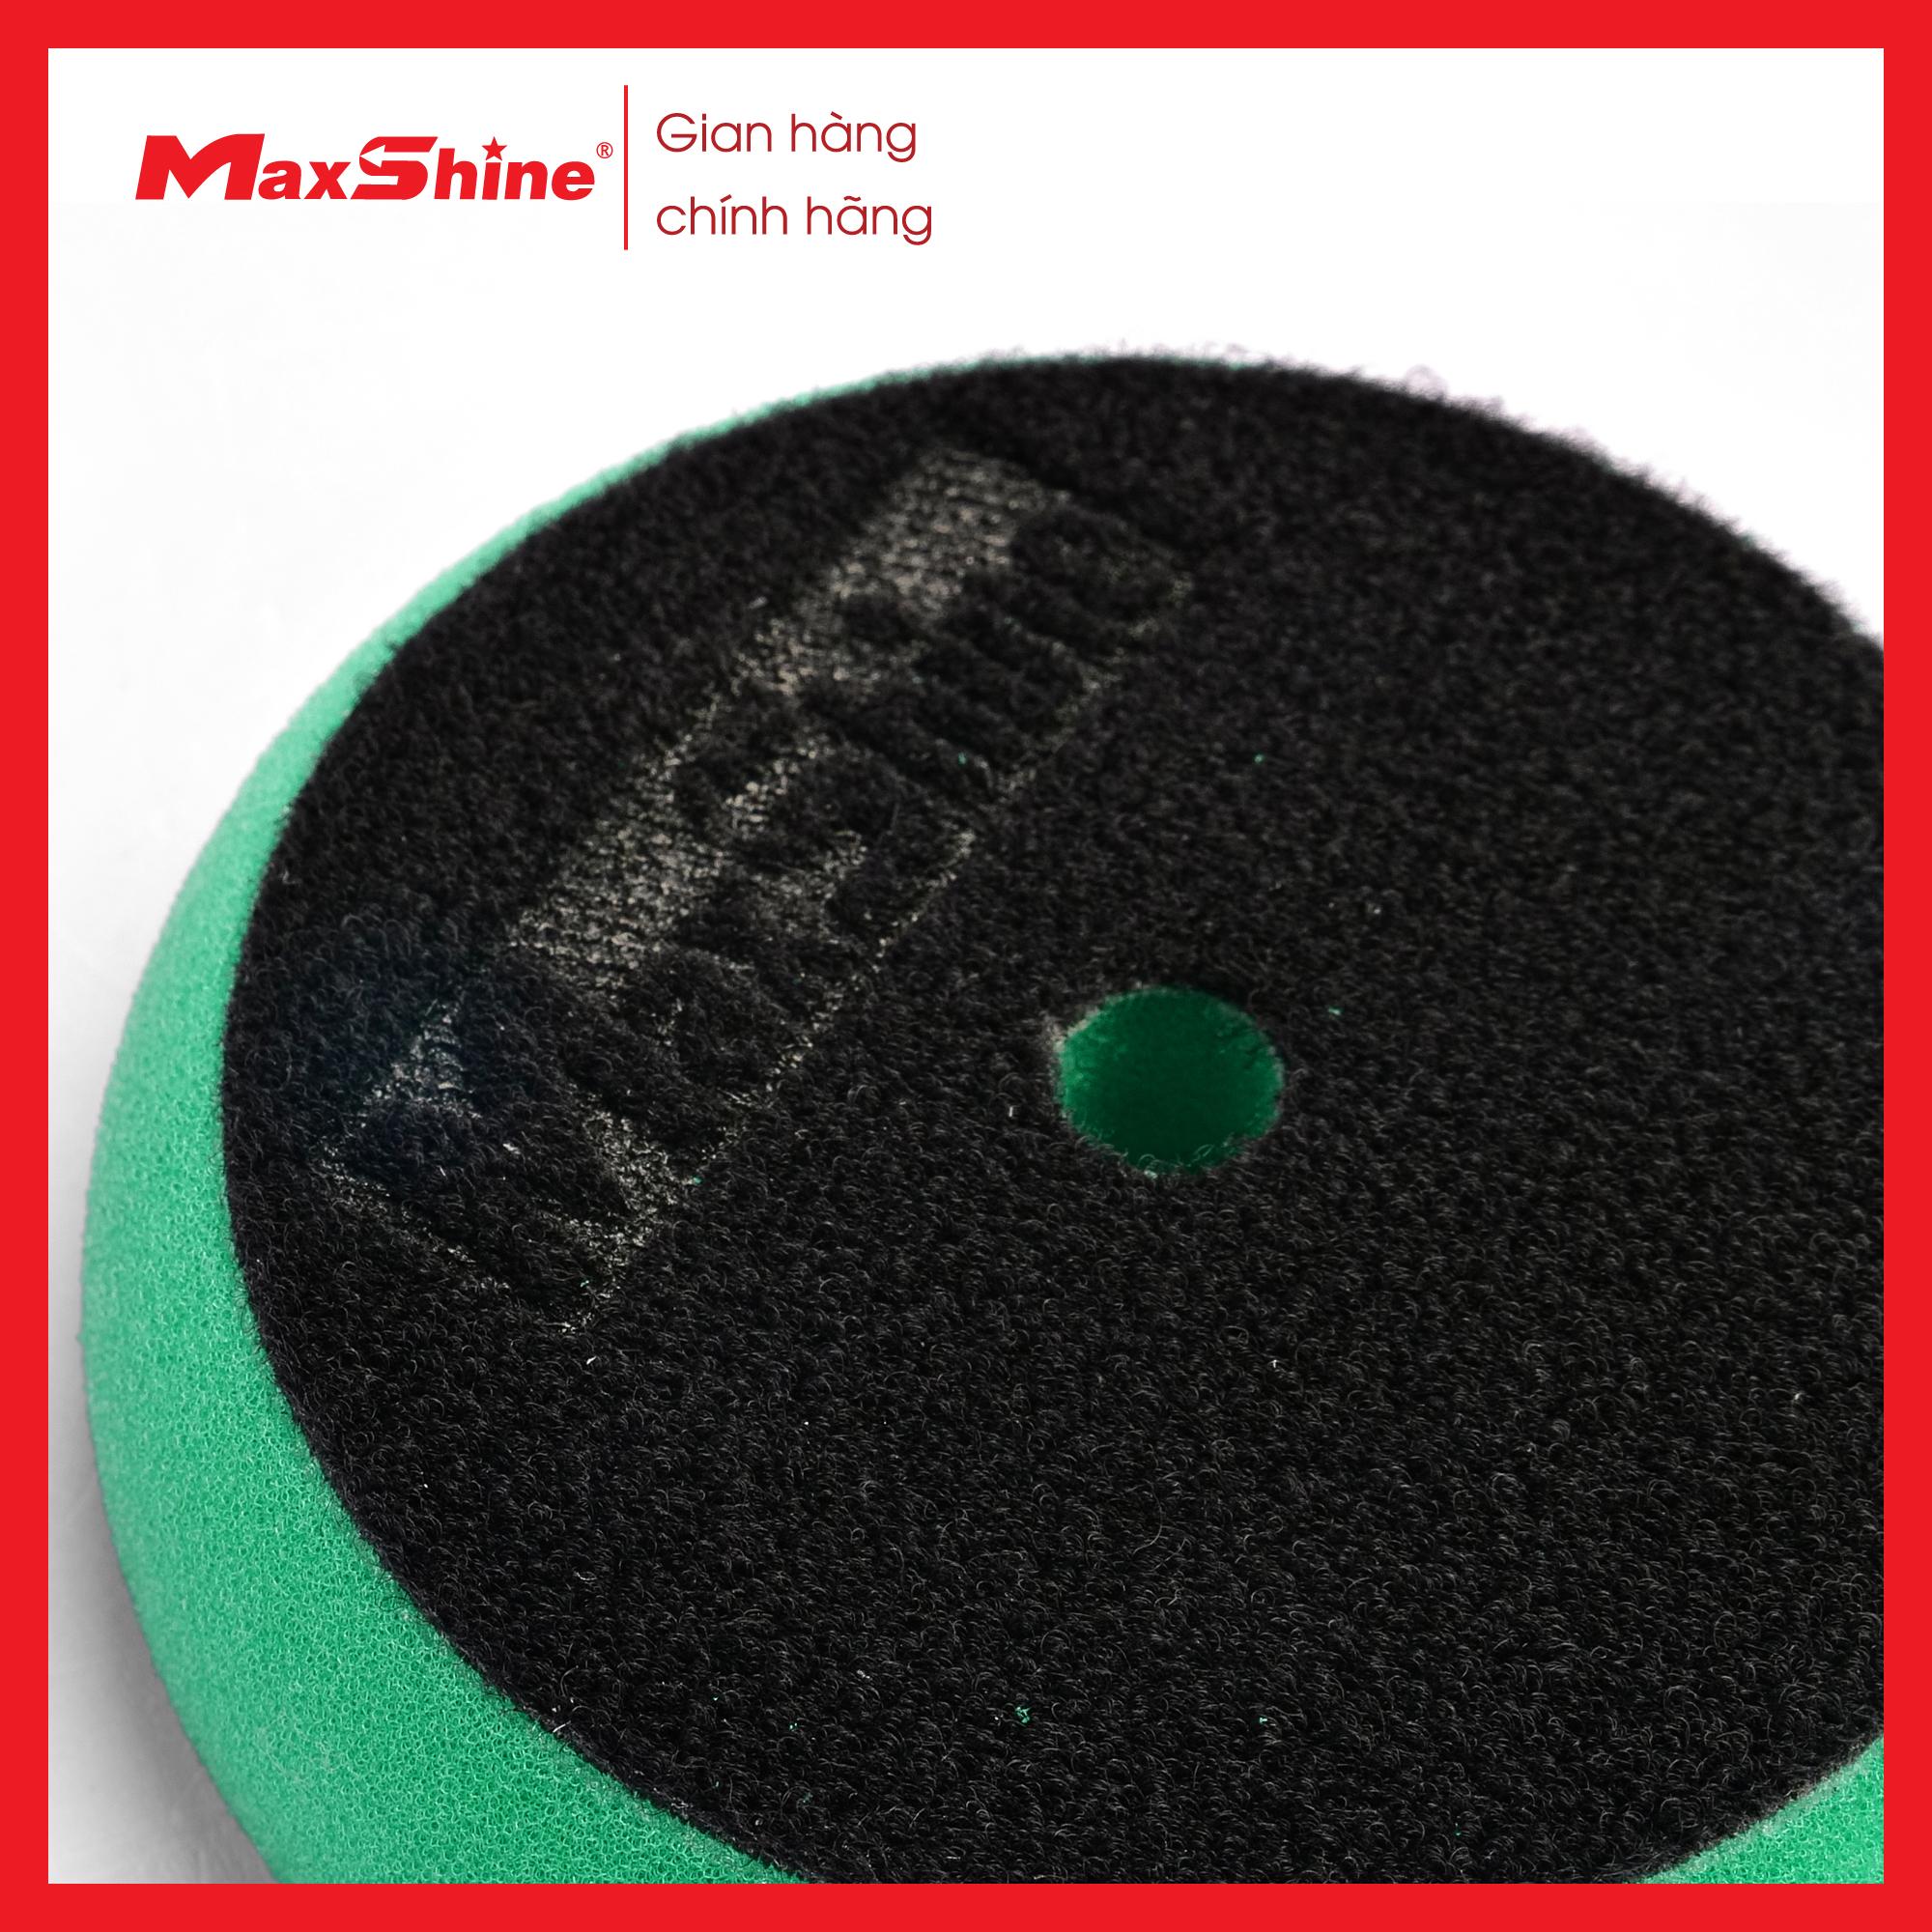 Phớt xốp/mút đánh bóng caro bước 1 kích thước 3 inch Maxshine 2001090G có màu xanh lá cây, được làm từ xốp mềm, có tính đàn hồi